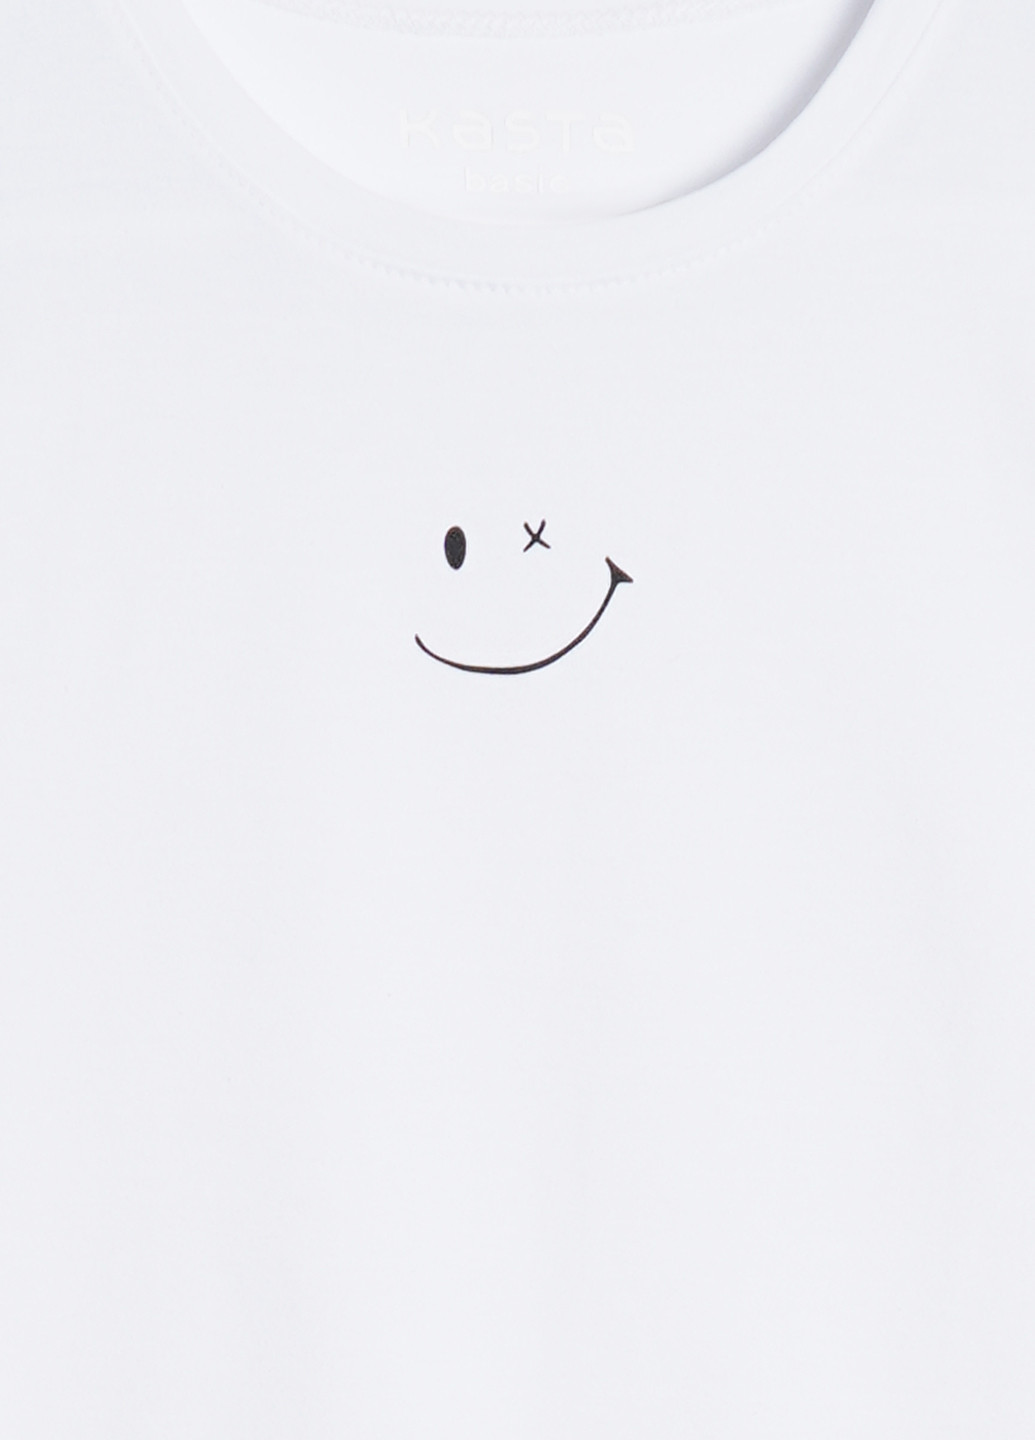 Белая летняя футболка базовая KASTA design